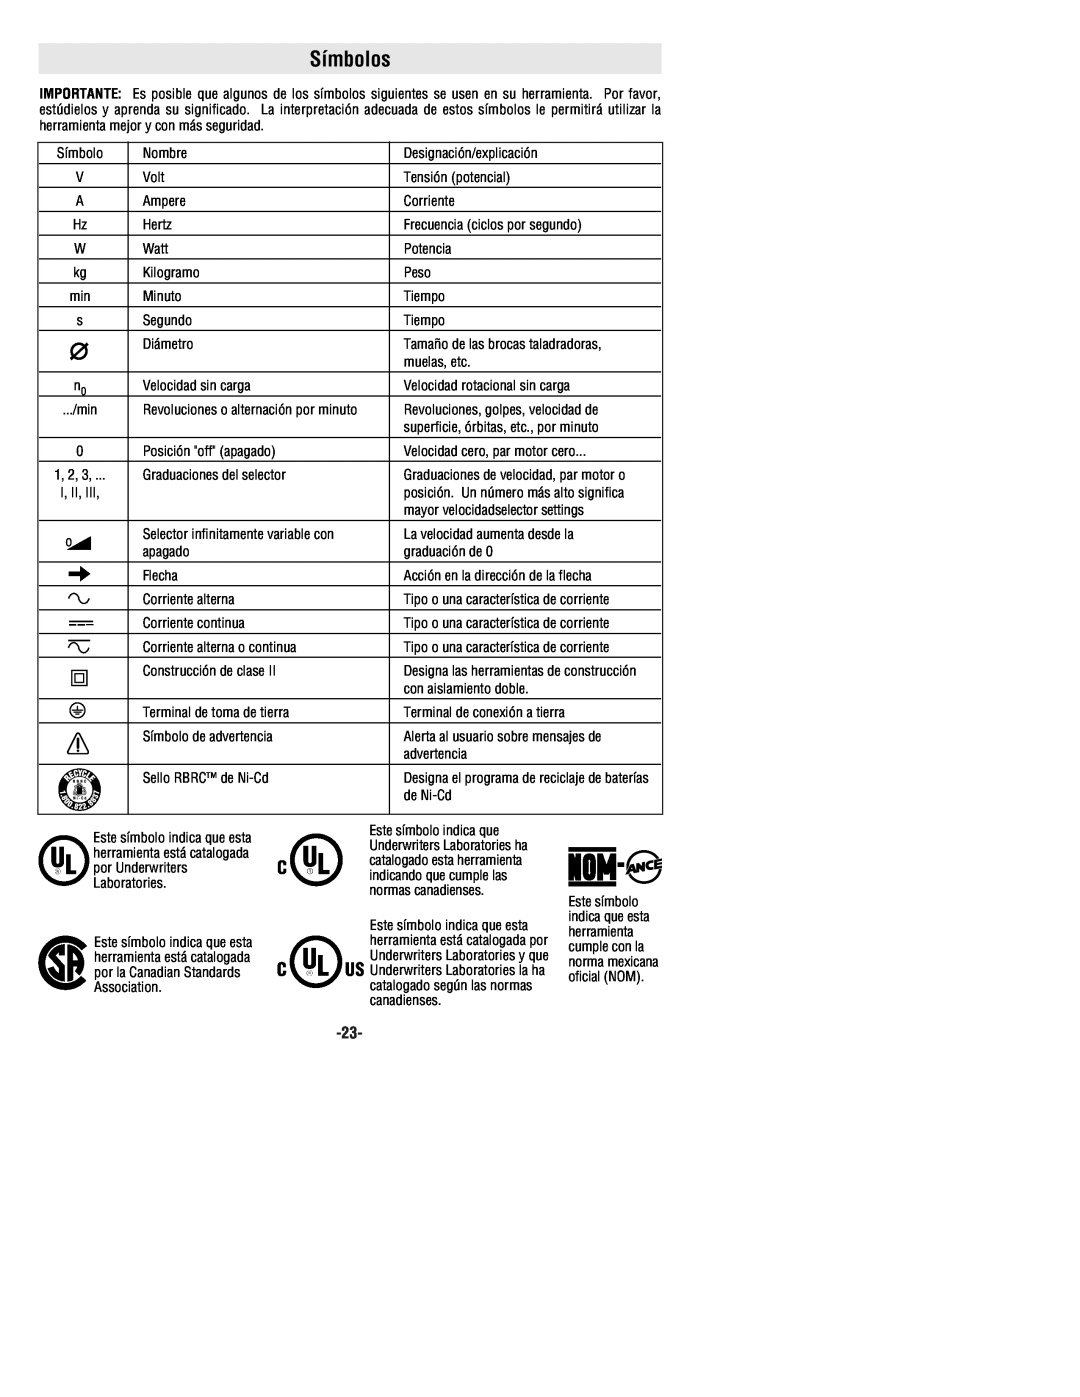 Bosch Power Tools 1199VSR manual Símbolos, Designa las herramientas de construcción 